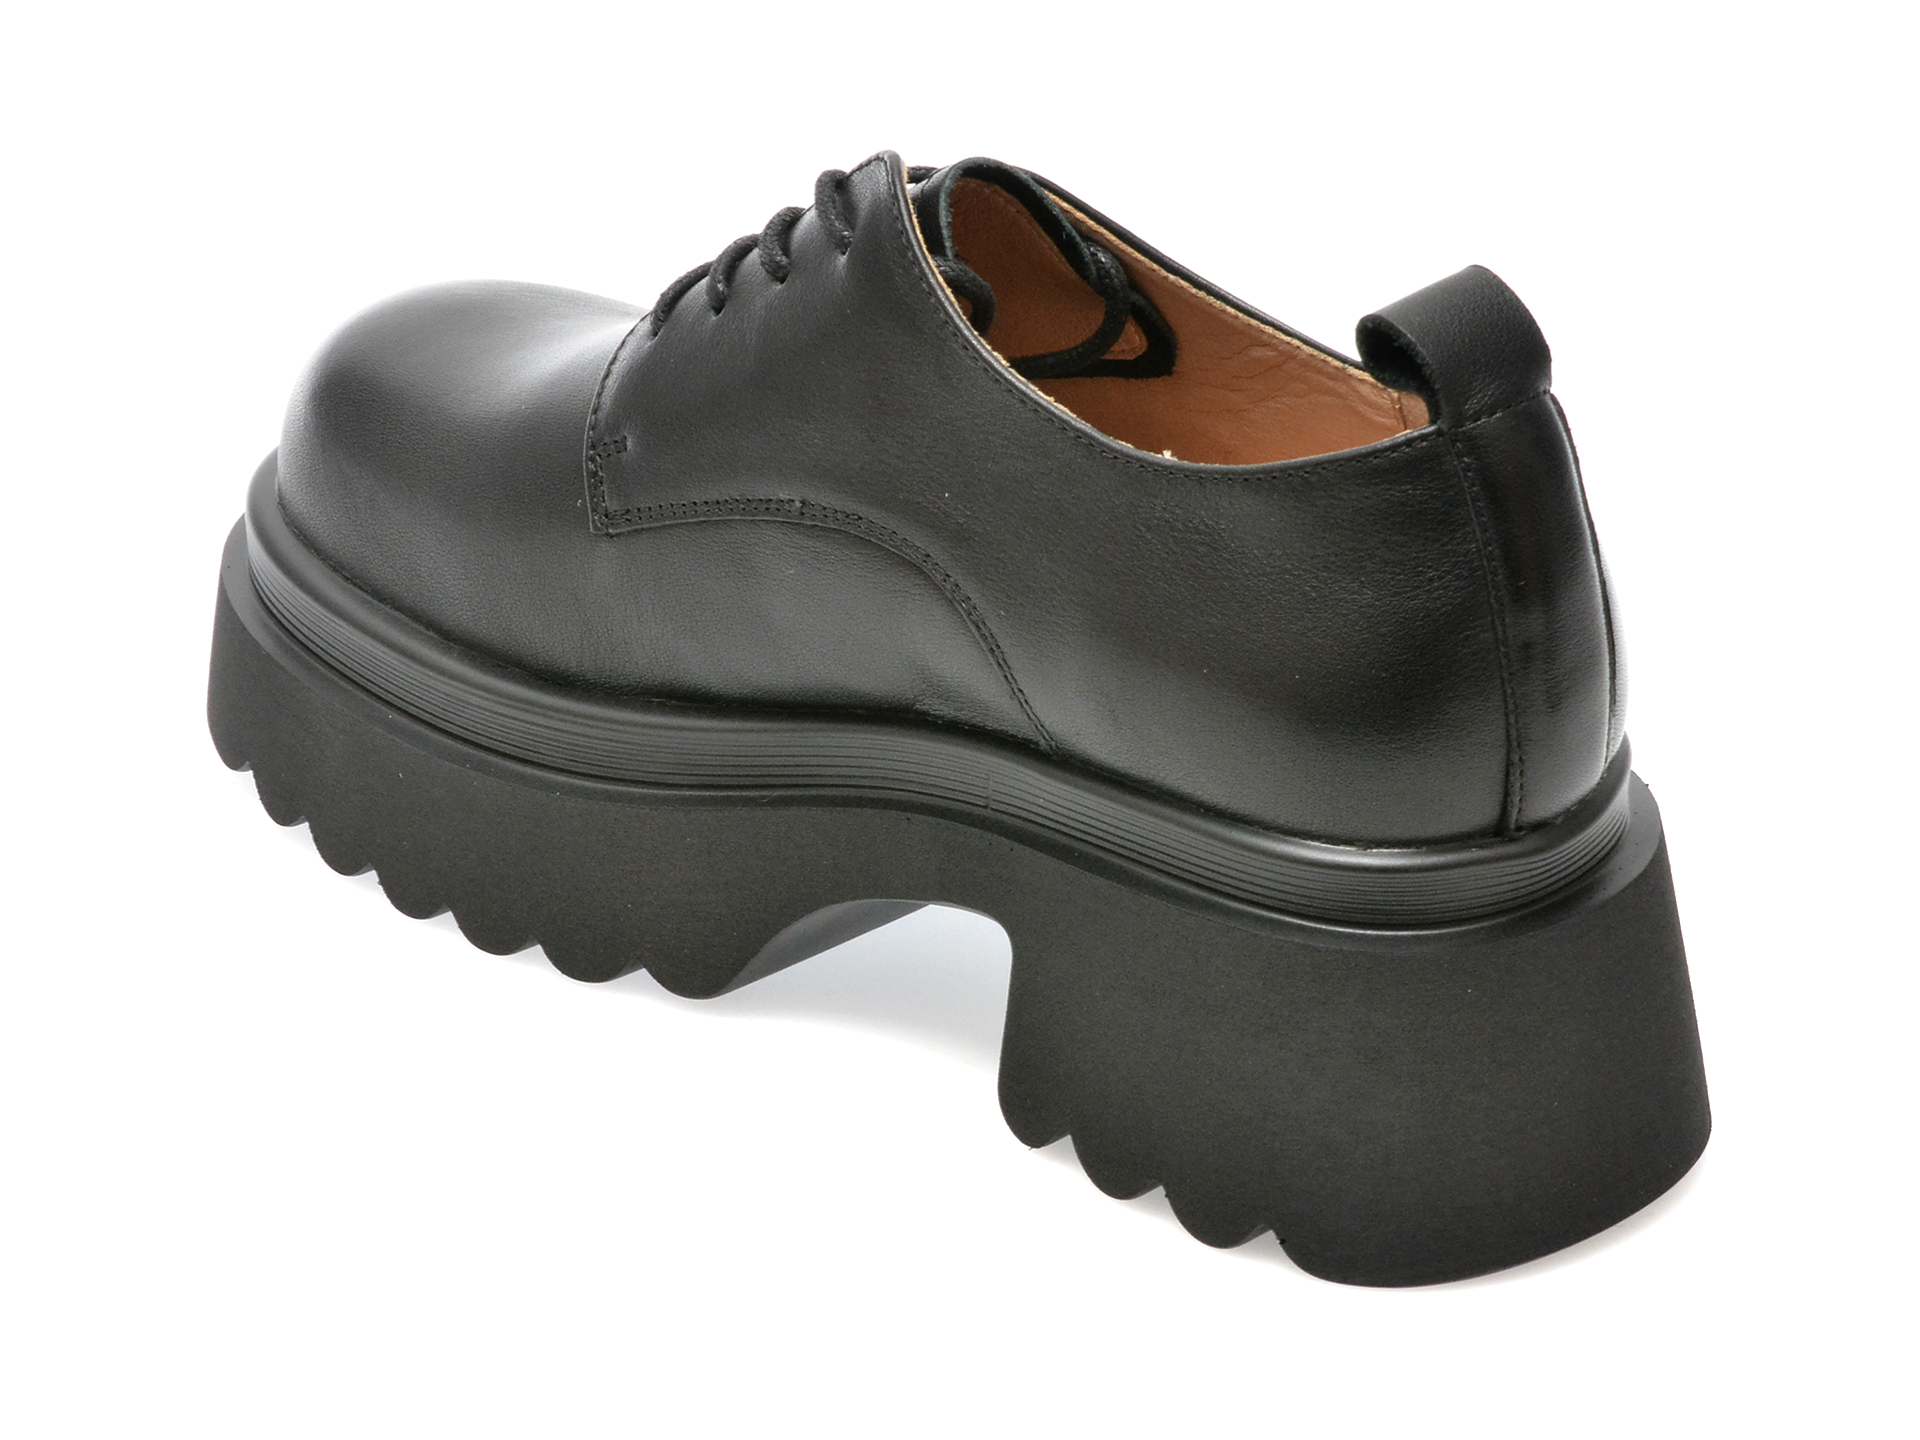 Poze Pantofi EPICA negri, 22238, din piele naturala